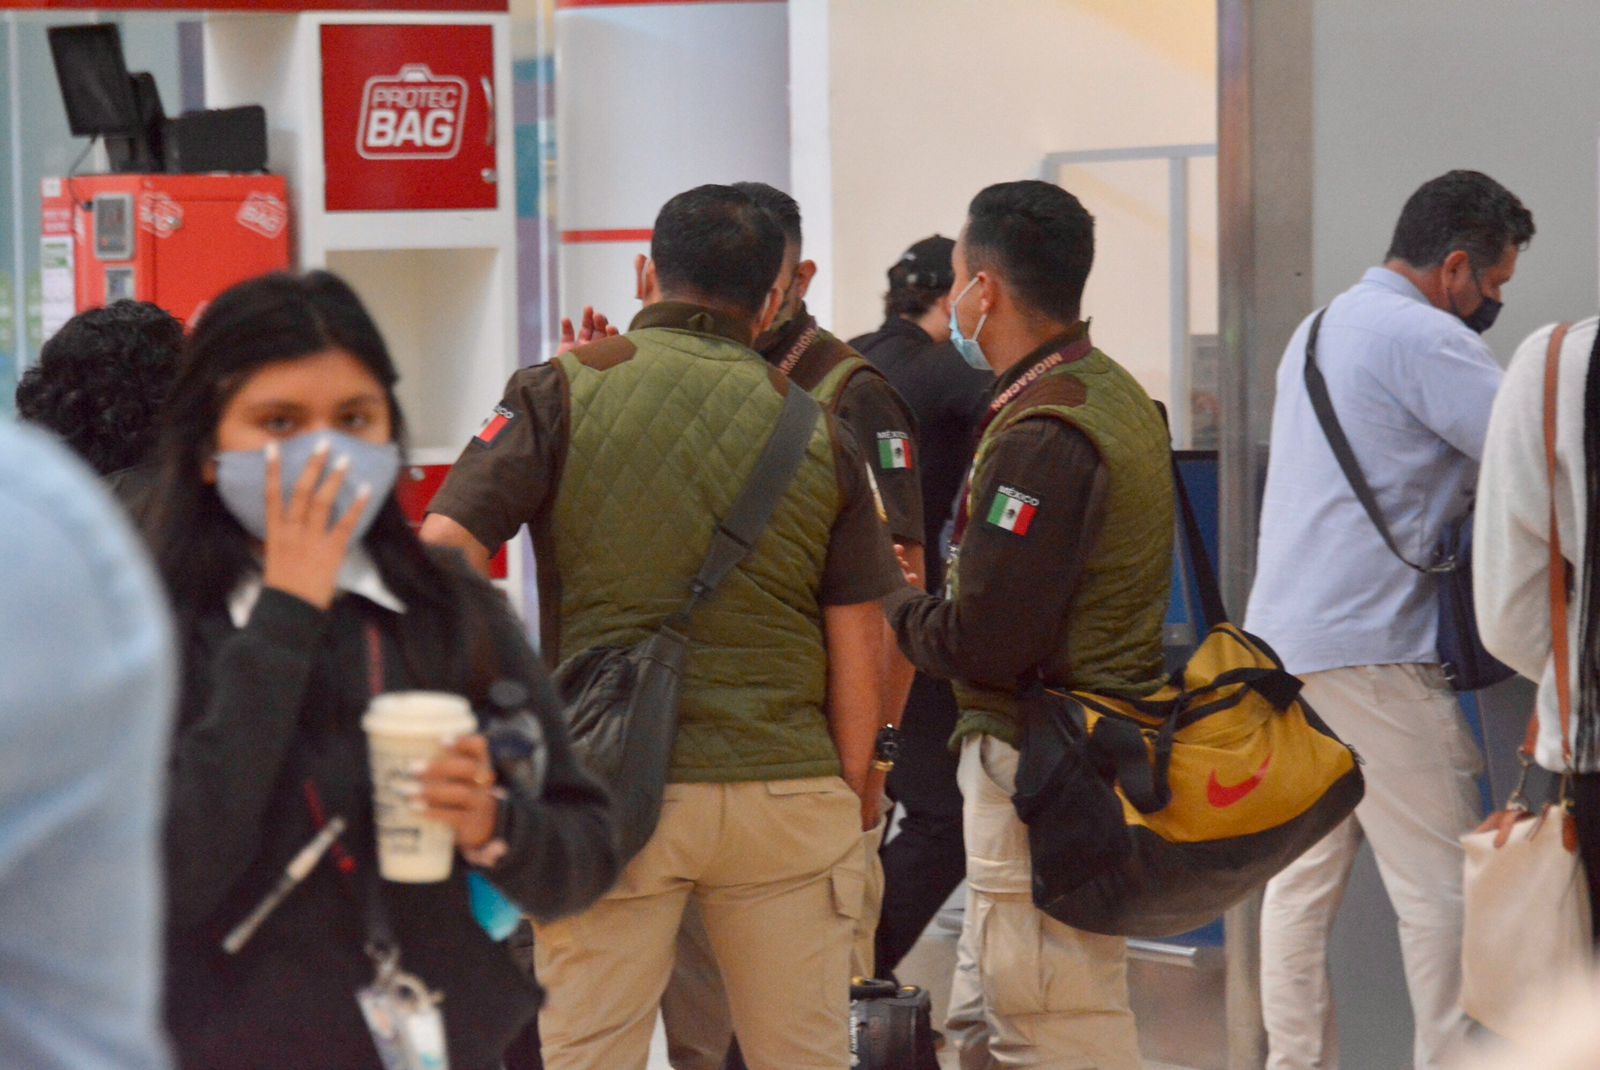 Llegan agentes de Migración al aeropuerto de Cancún tras quejas: VIDEO